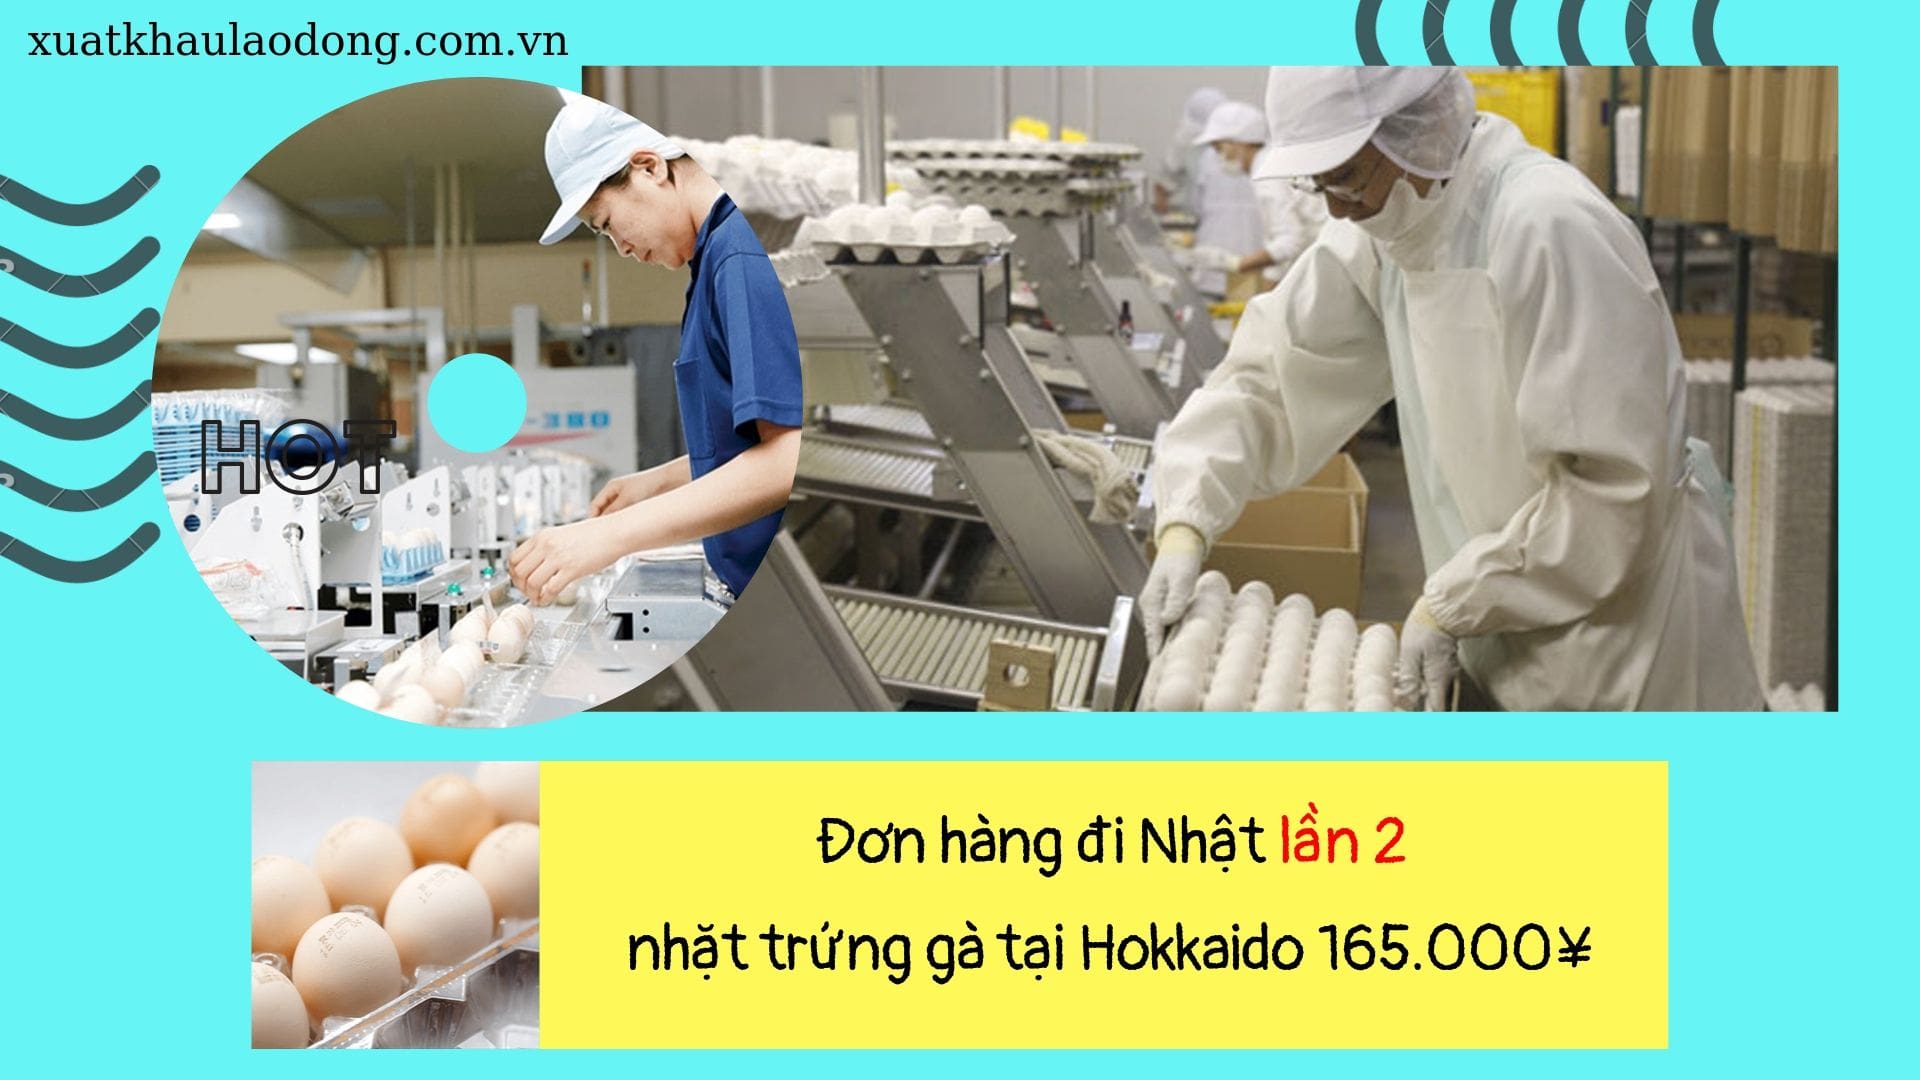 Đơn hàng nhặt trứng gà vào dây chuyền lần 2 lương khủng tại Hokkaido, Nhật Bản